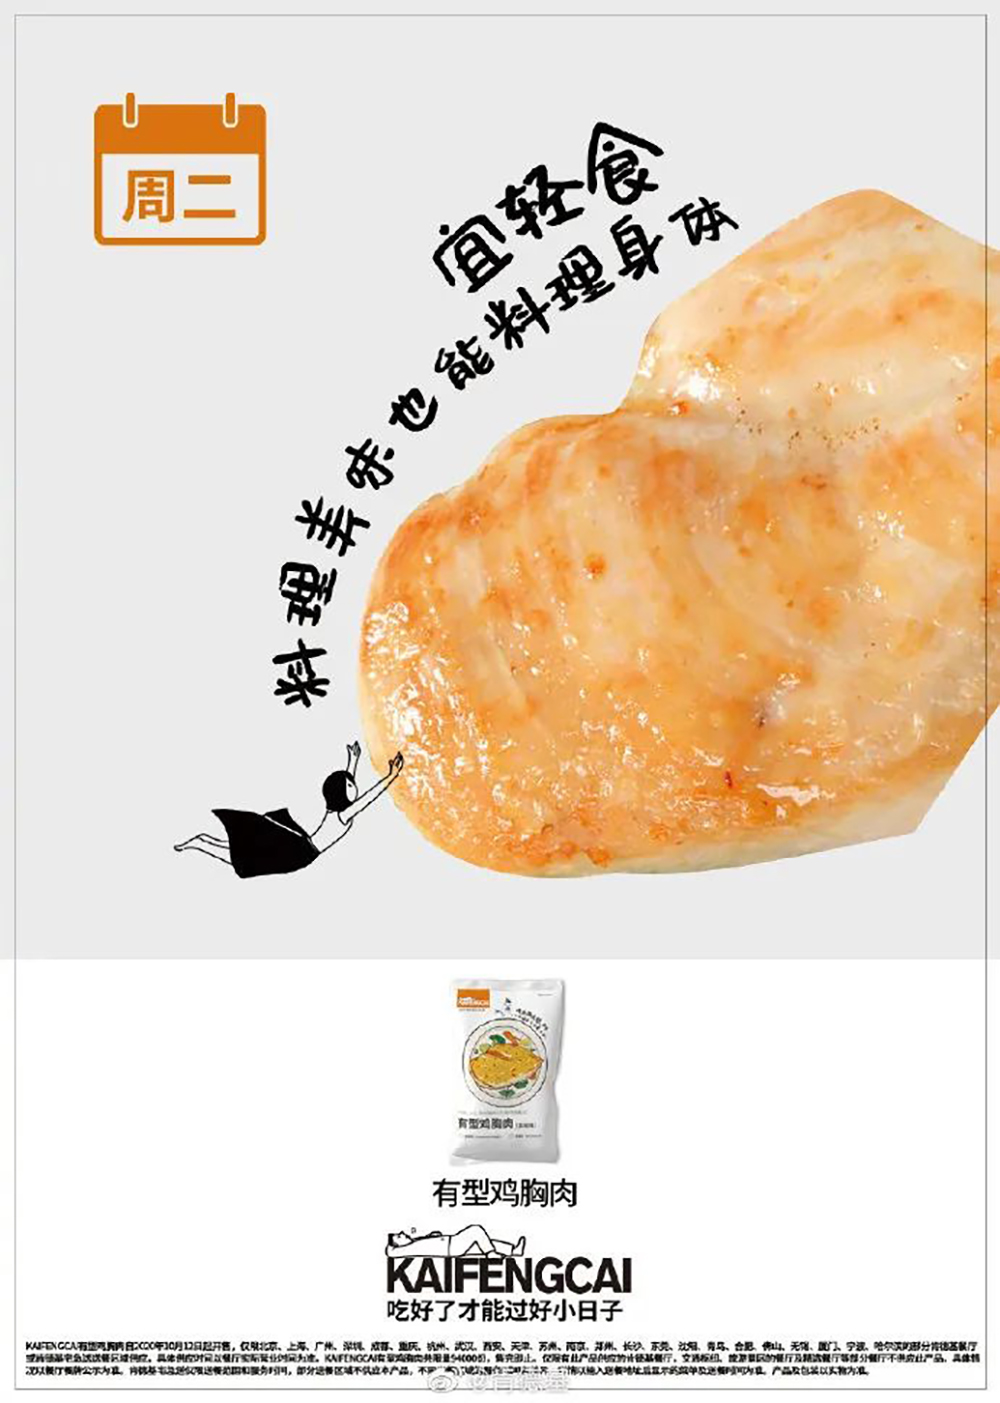 29张肯德基「KAIFENGCAI」美食产品海报